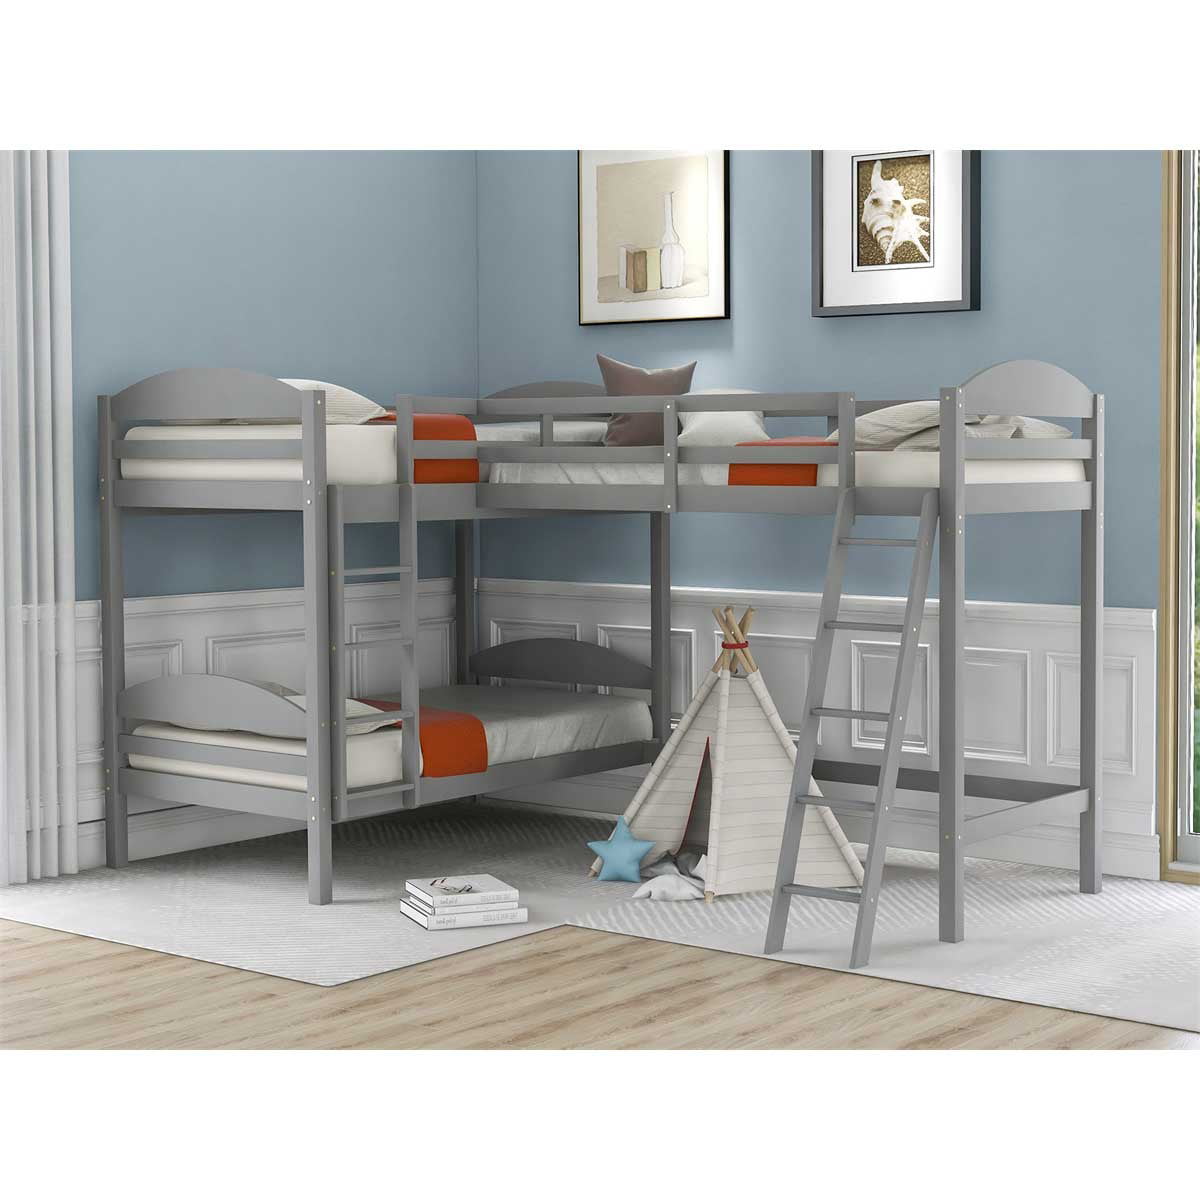 Triple Bunk Bed Wooden Loft, Triple Bunk Bed Dimensions